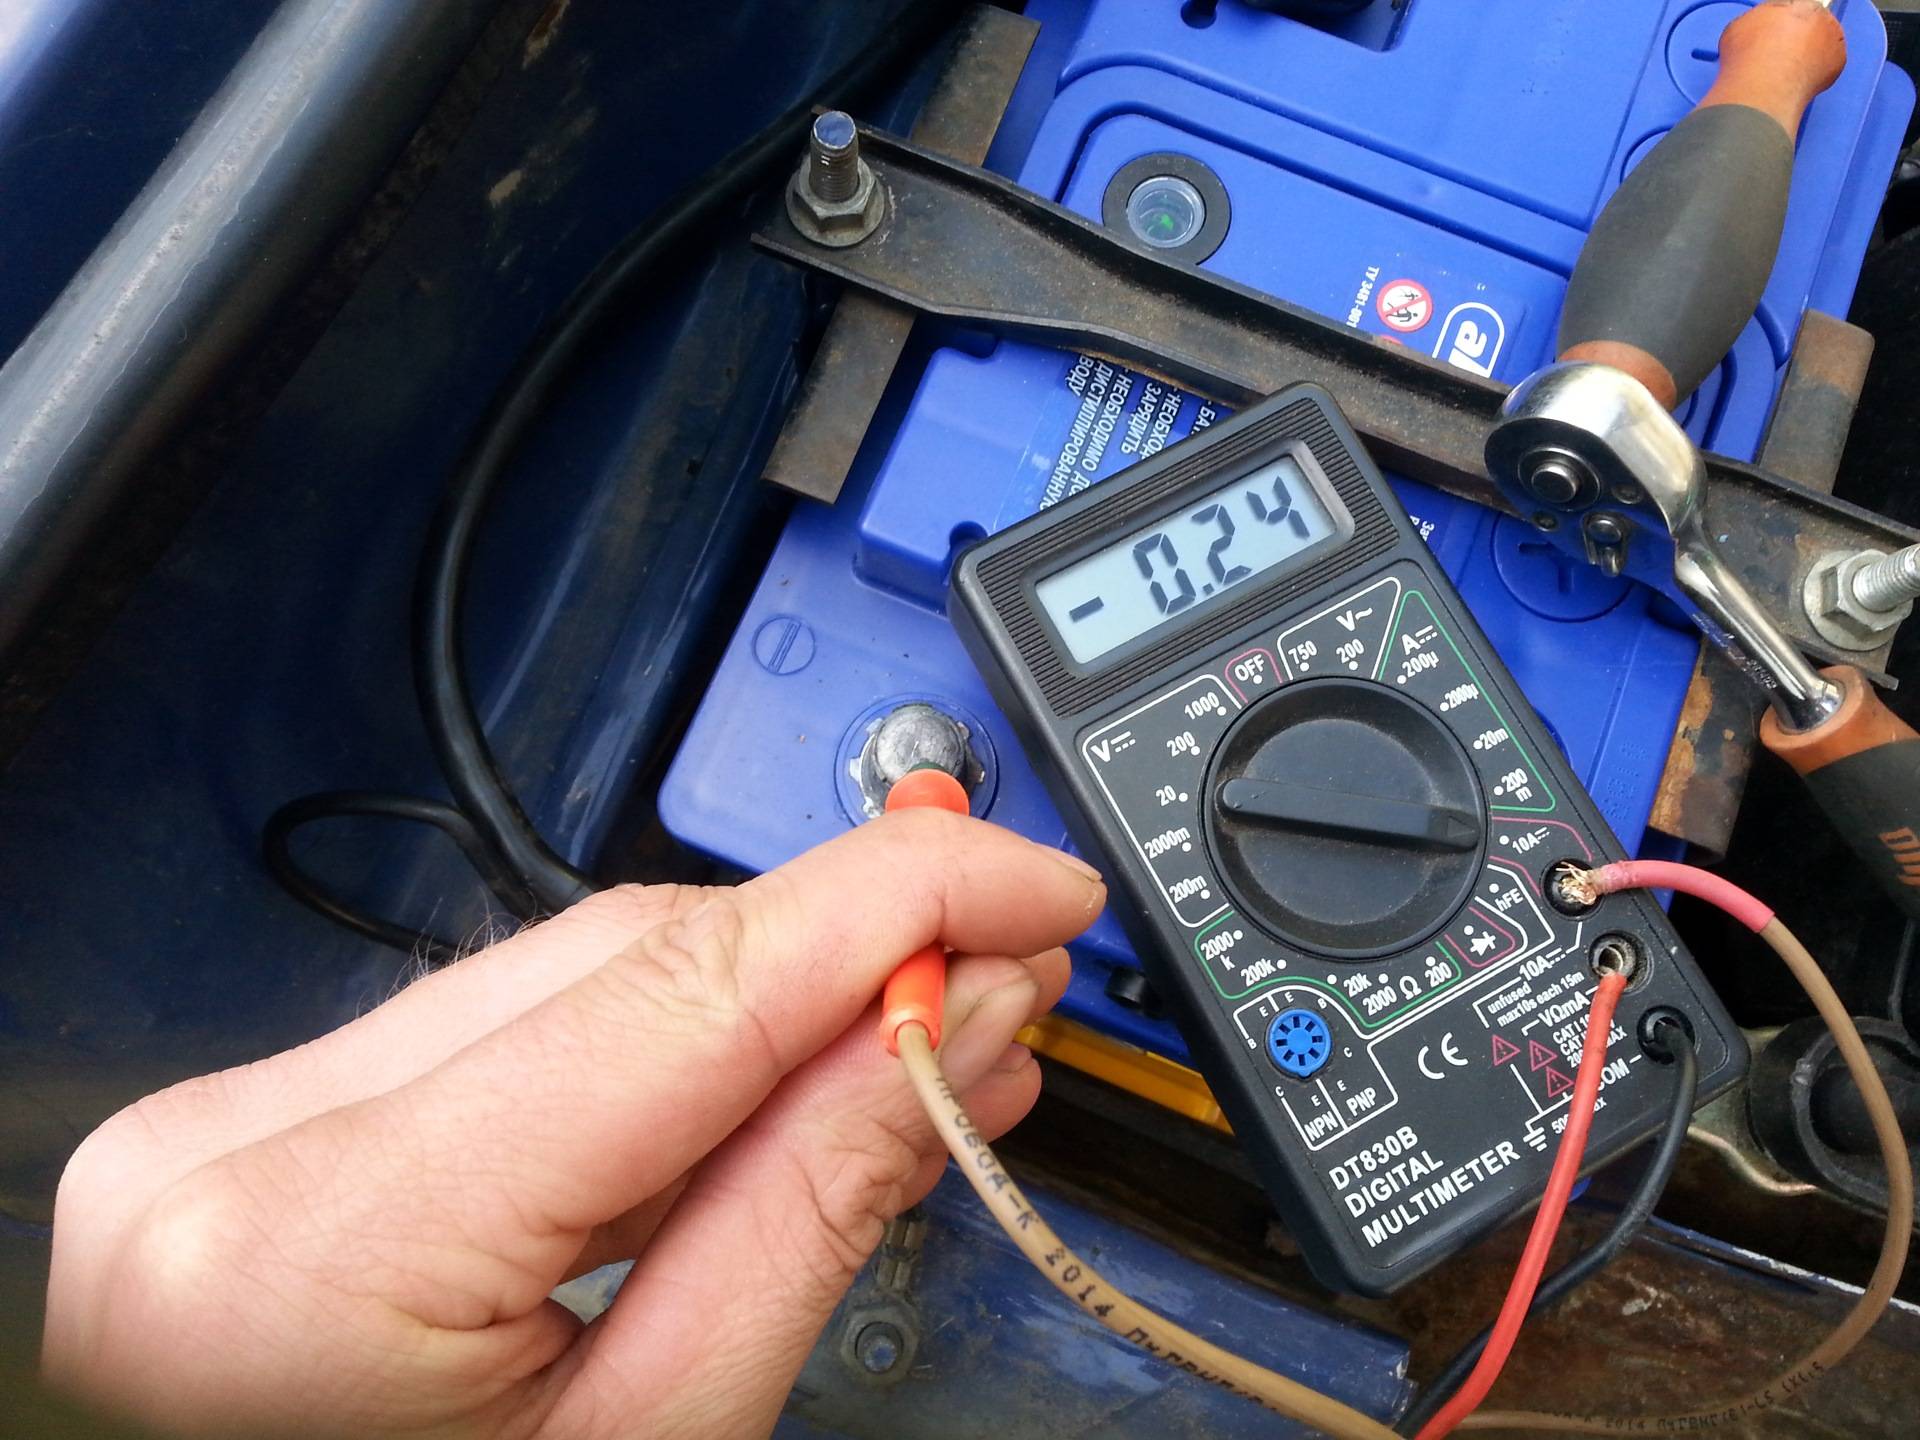 Как проверить утечку тока на автомобиле мультиметром?